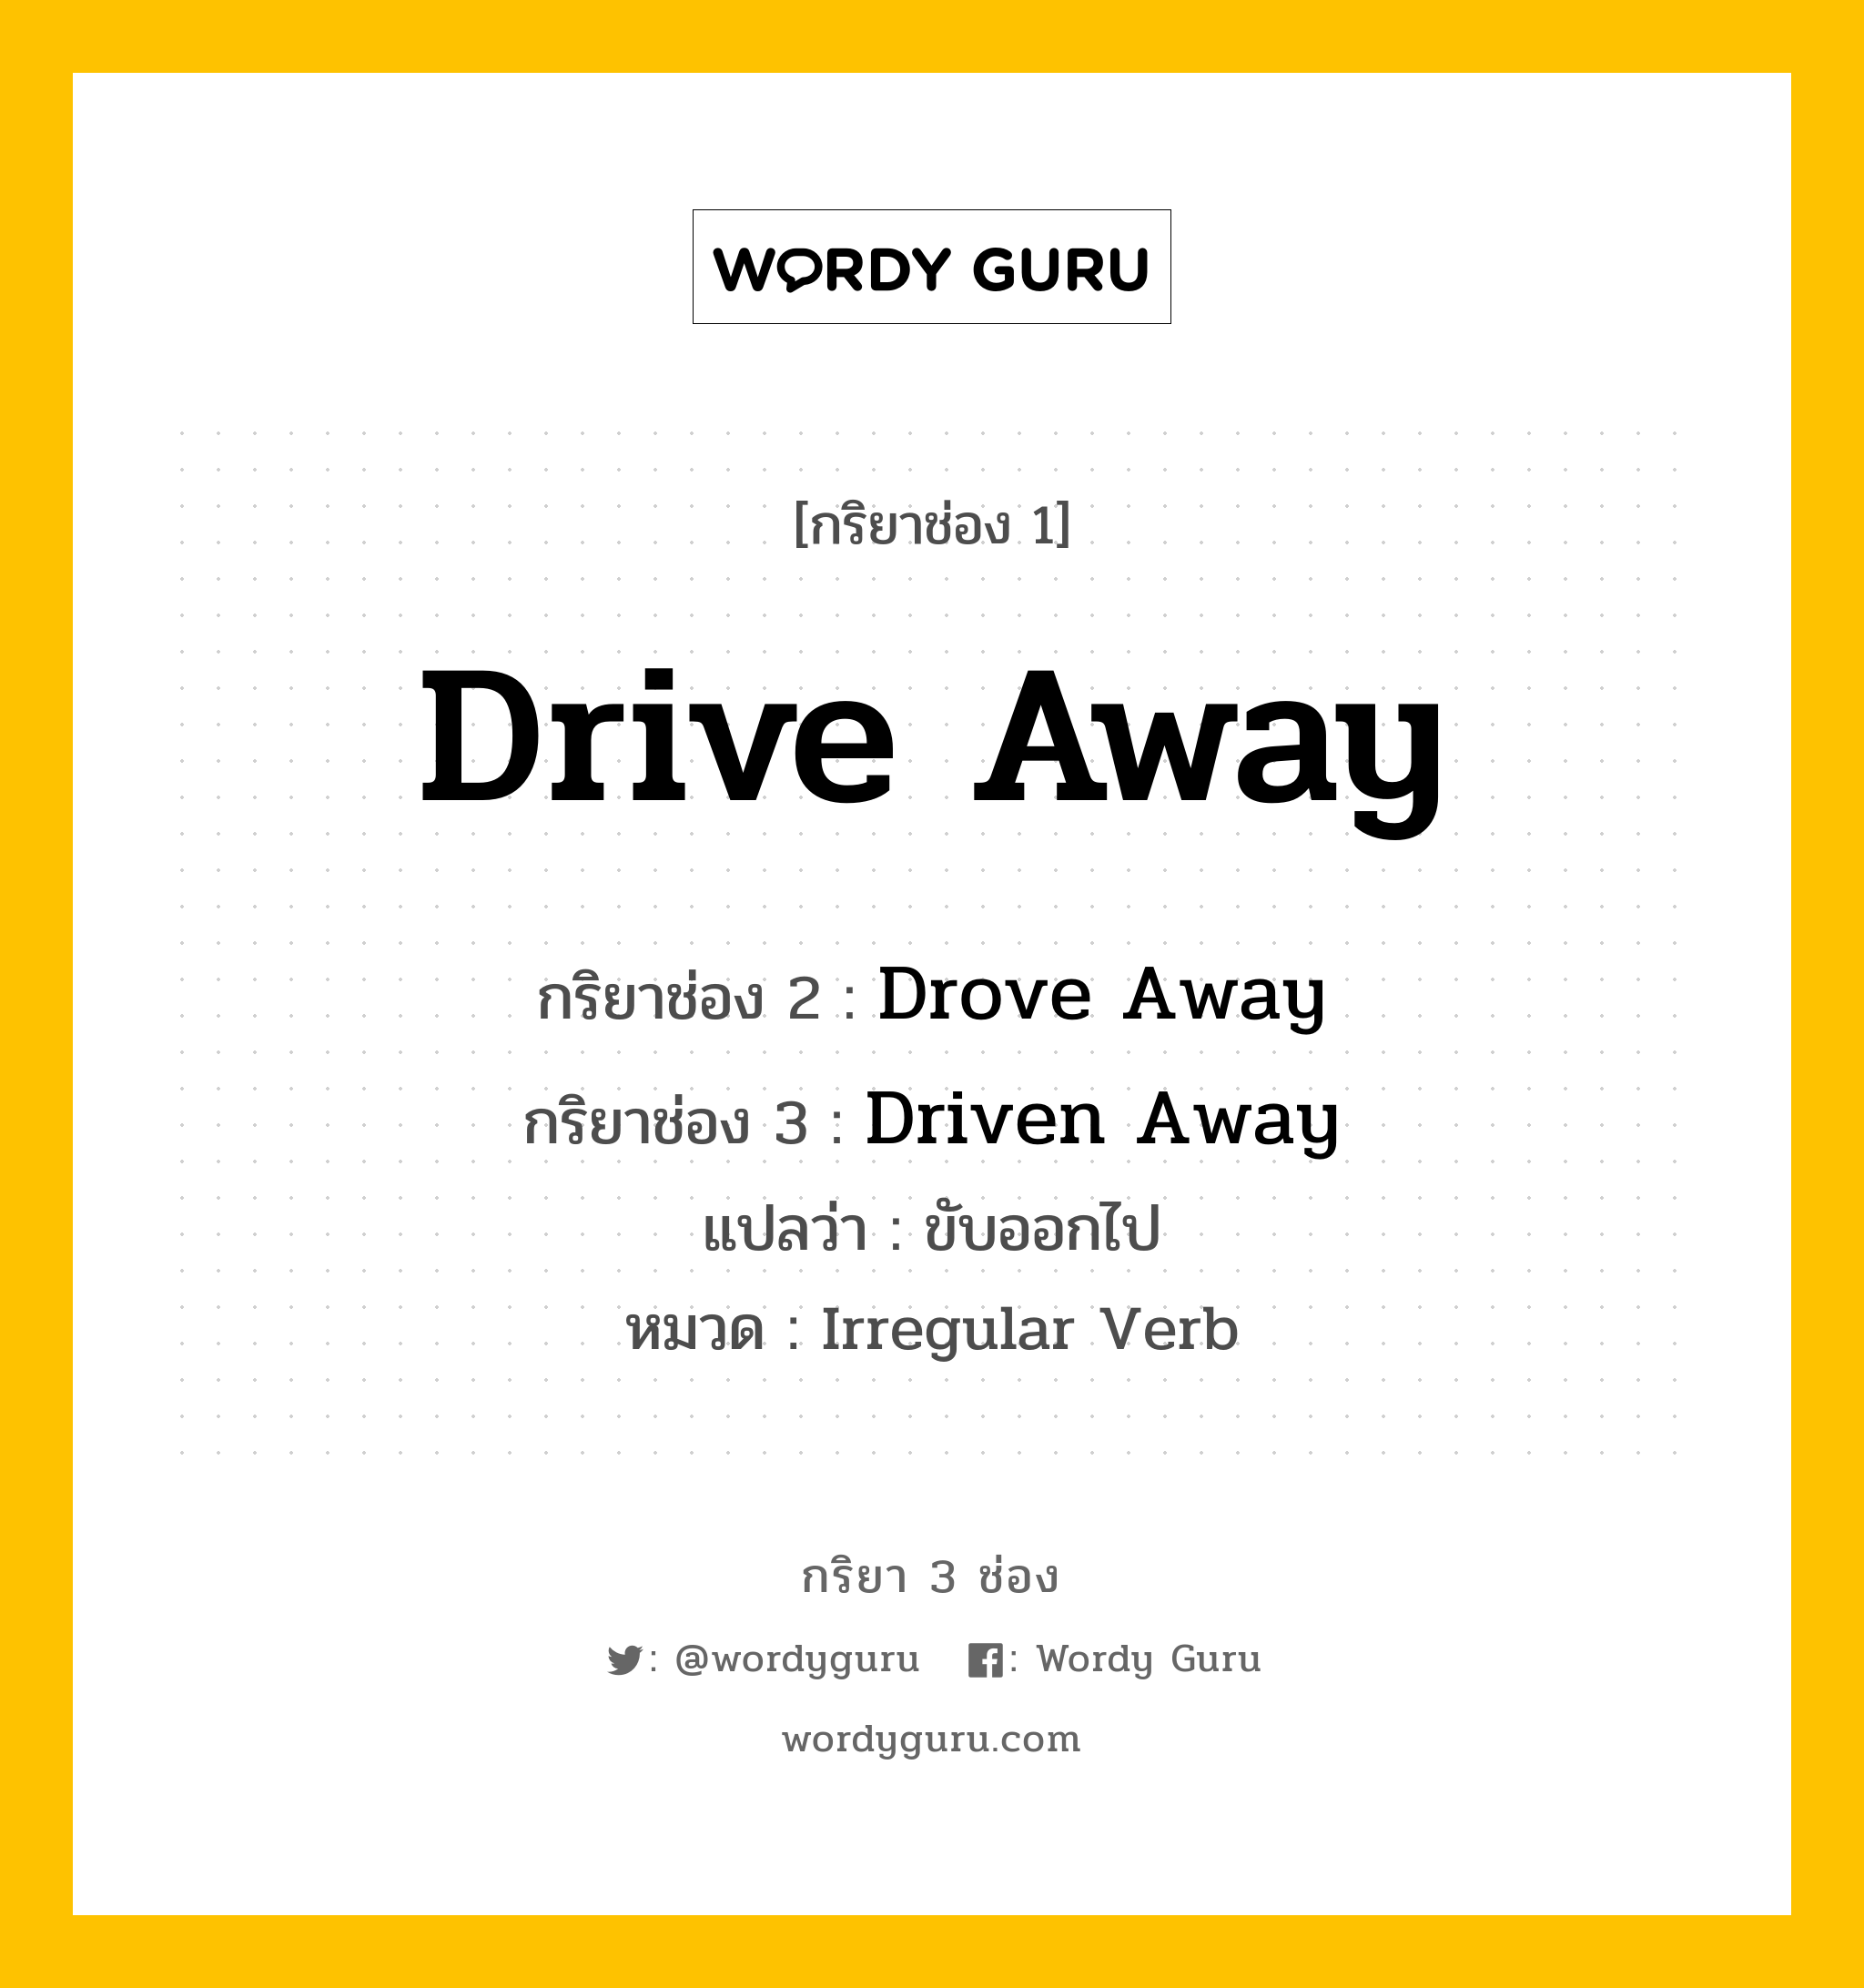 Drive Away มีกริยา 3 ช่องอะไรบ้าง? คำศัพท์ในกลุ่มประเภท Irregular Verb, กริยาช่อง 1 Drive Away กริยาช่อง 2 Drove Away กริยาช่อง 3 Driven Away แปลว่า ขับออกไป หมวด Irregular Verb หมวด Irregular Verb